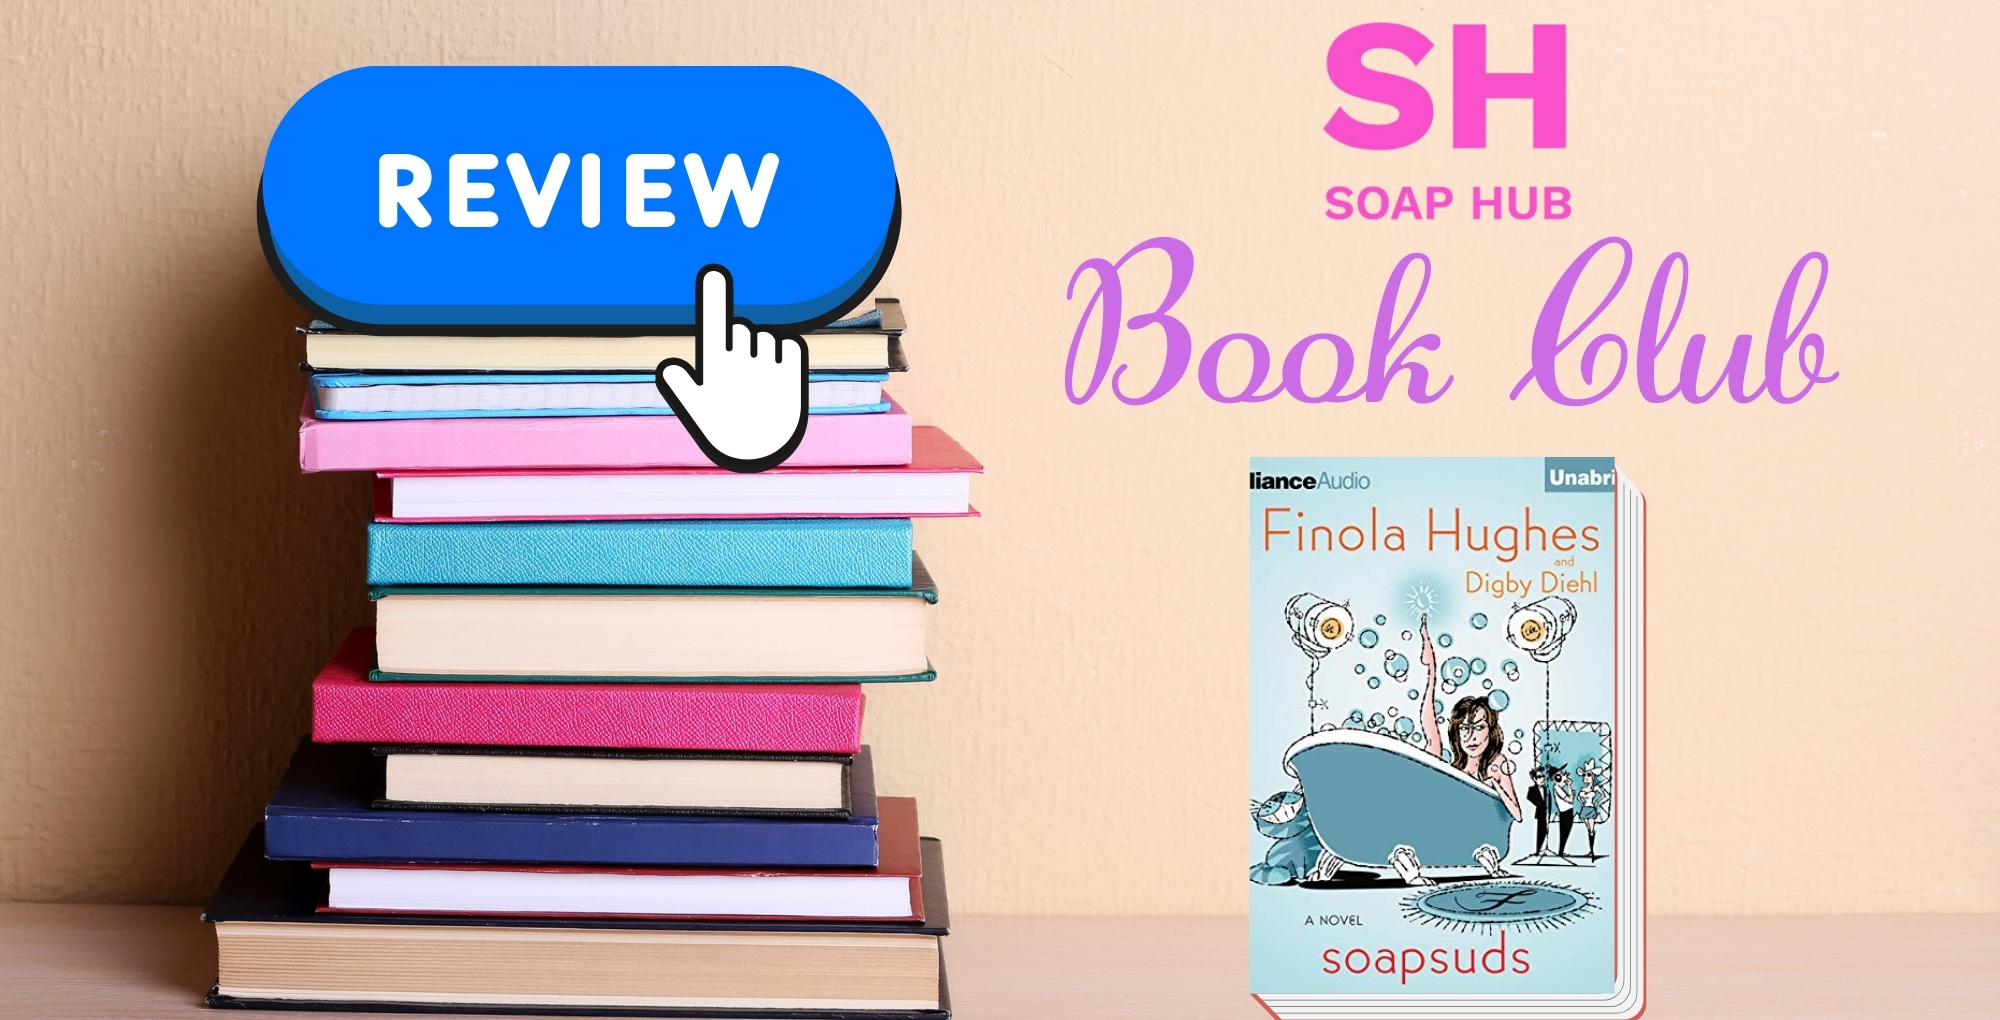 soap hub book club reviews finola hughes' soapsuds.